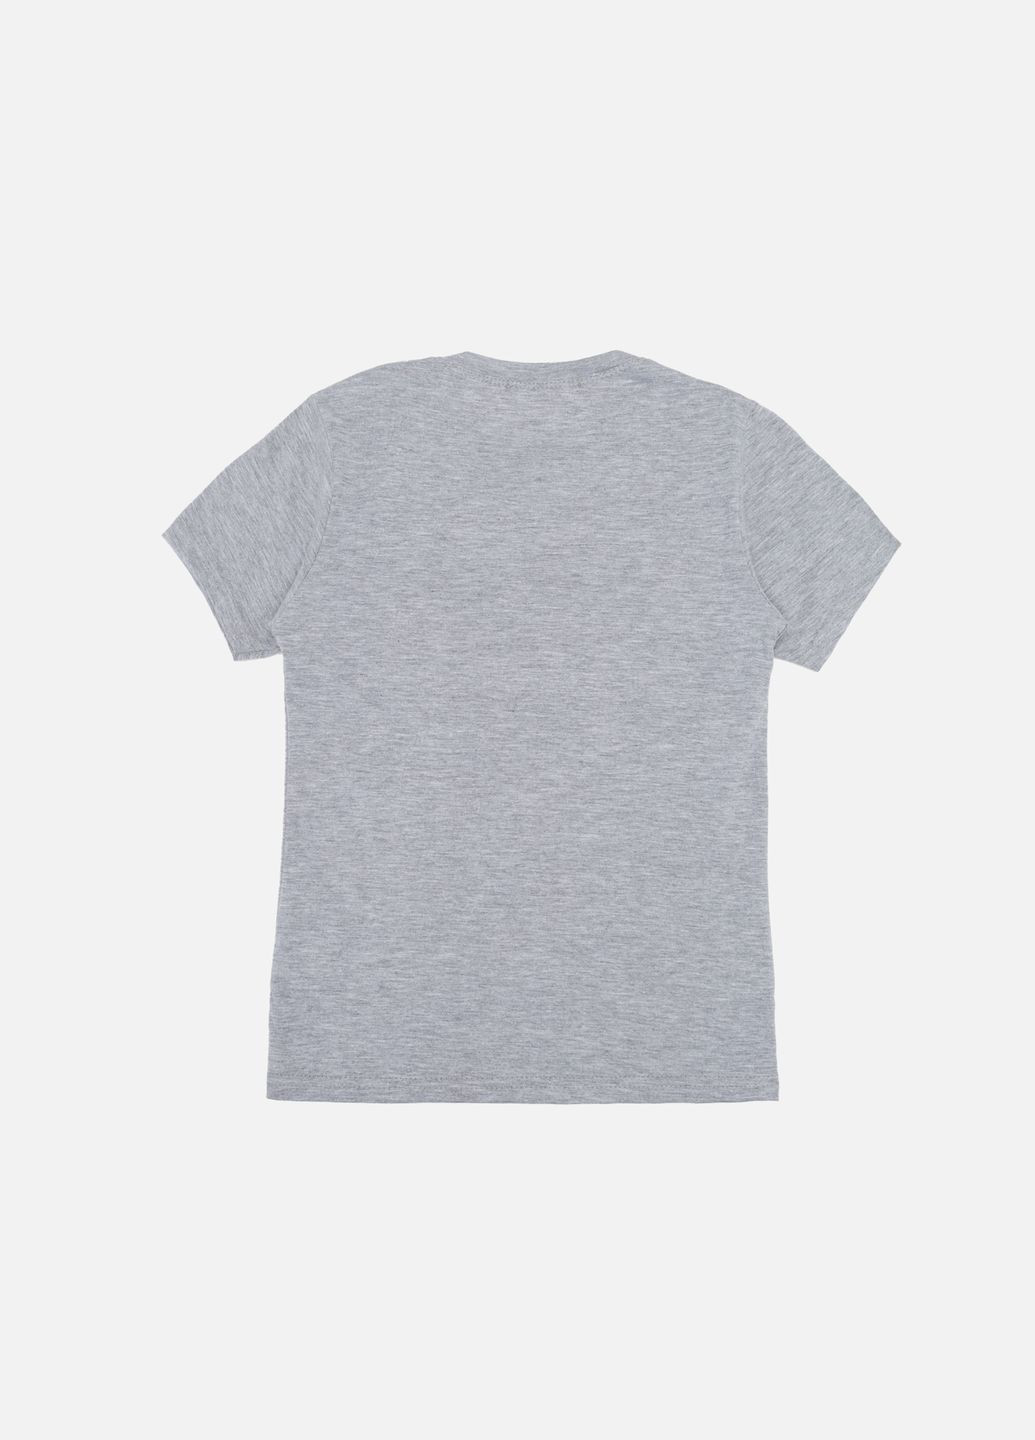 Сіра літня футболка з коротким рукавом для хлопчика колір сірий цб-00243966 Essu